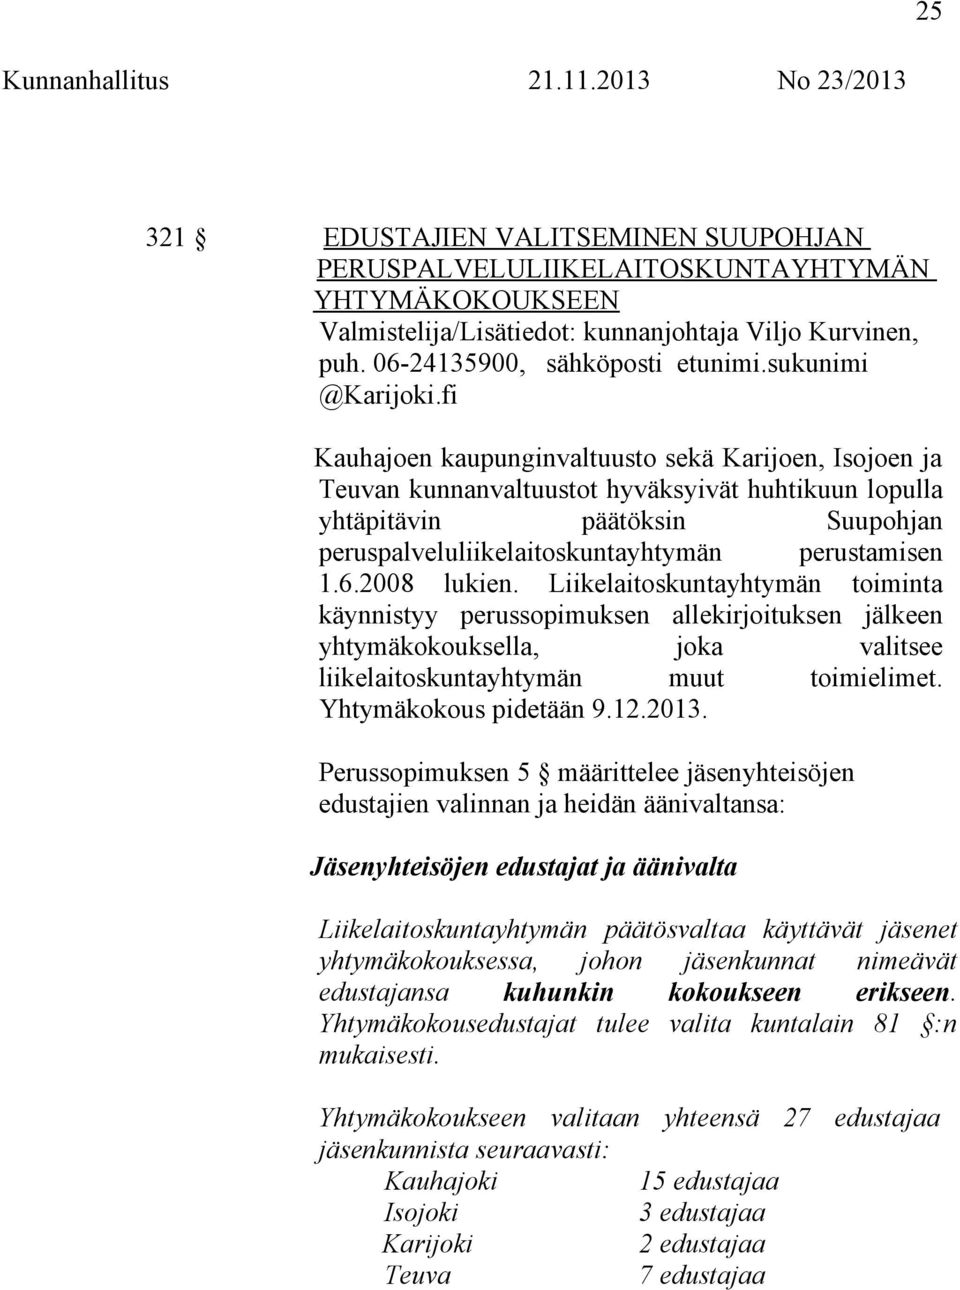 fi Kauhajoen kaupunginvaltuusto sekä Karijoen, Isojoen ja Teuvan kunnanvaltuustot hyväksyivät huhtikuun lopulla yhtäpitävin päätöksin Suupohjan peruspalveluliikelaitoskuntayhtymän perustamisen 1.6.